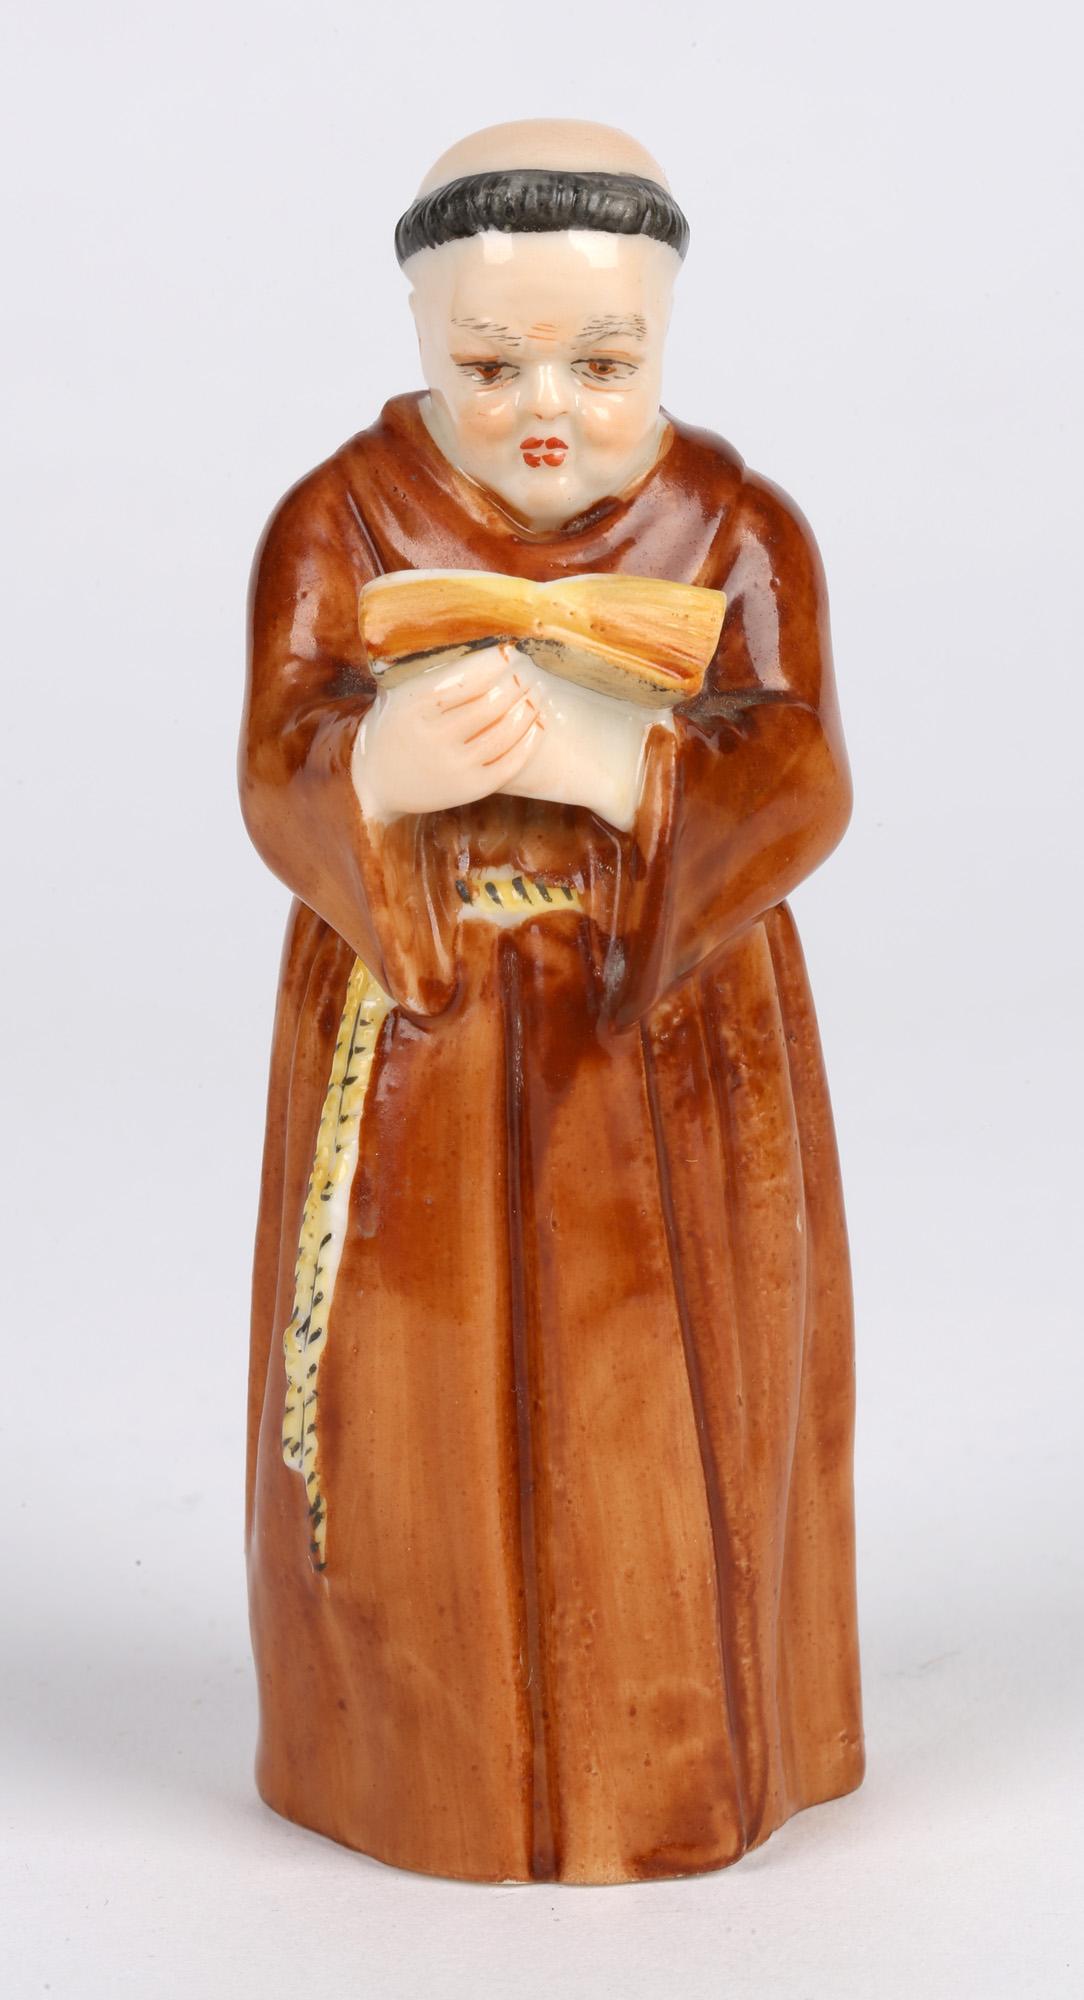 Ein sehr fein gearbeiteter antiker Royal Worcester Porzellan-Kerzenlöscher in Form eines Mönchs, der eine Bibel liest, datiert 1905. Der Kerzenlöscher ist als Mönch in einer um die Taille gebundenen Mönchskutte dargestellt, der eine aufgeschlagene